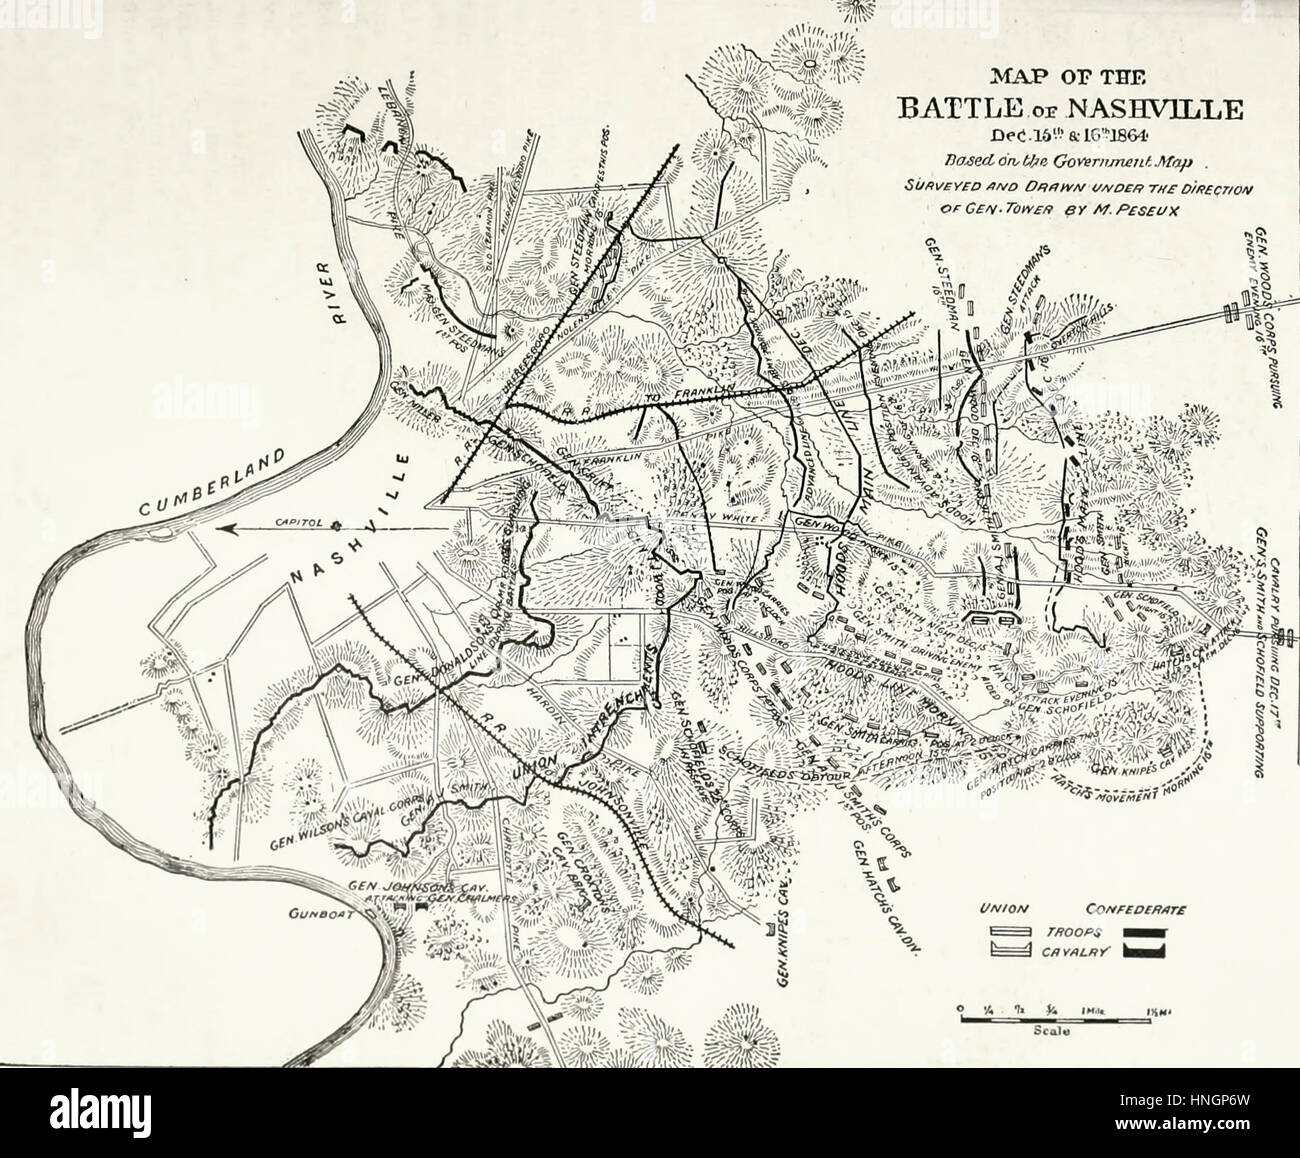 Mapa de la batalla de Nashville, el 15 y 16 de diciembre, 1864. Guerra Civil EE.UU. Foto de stock